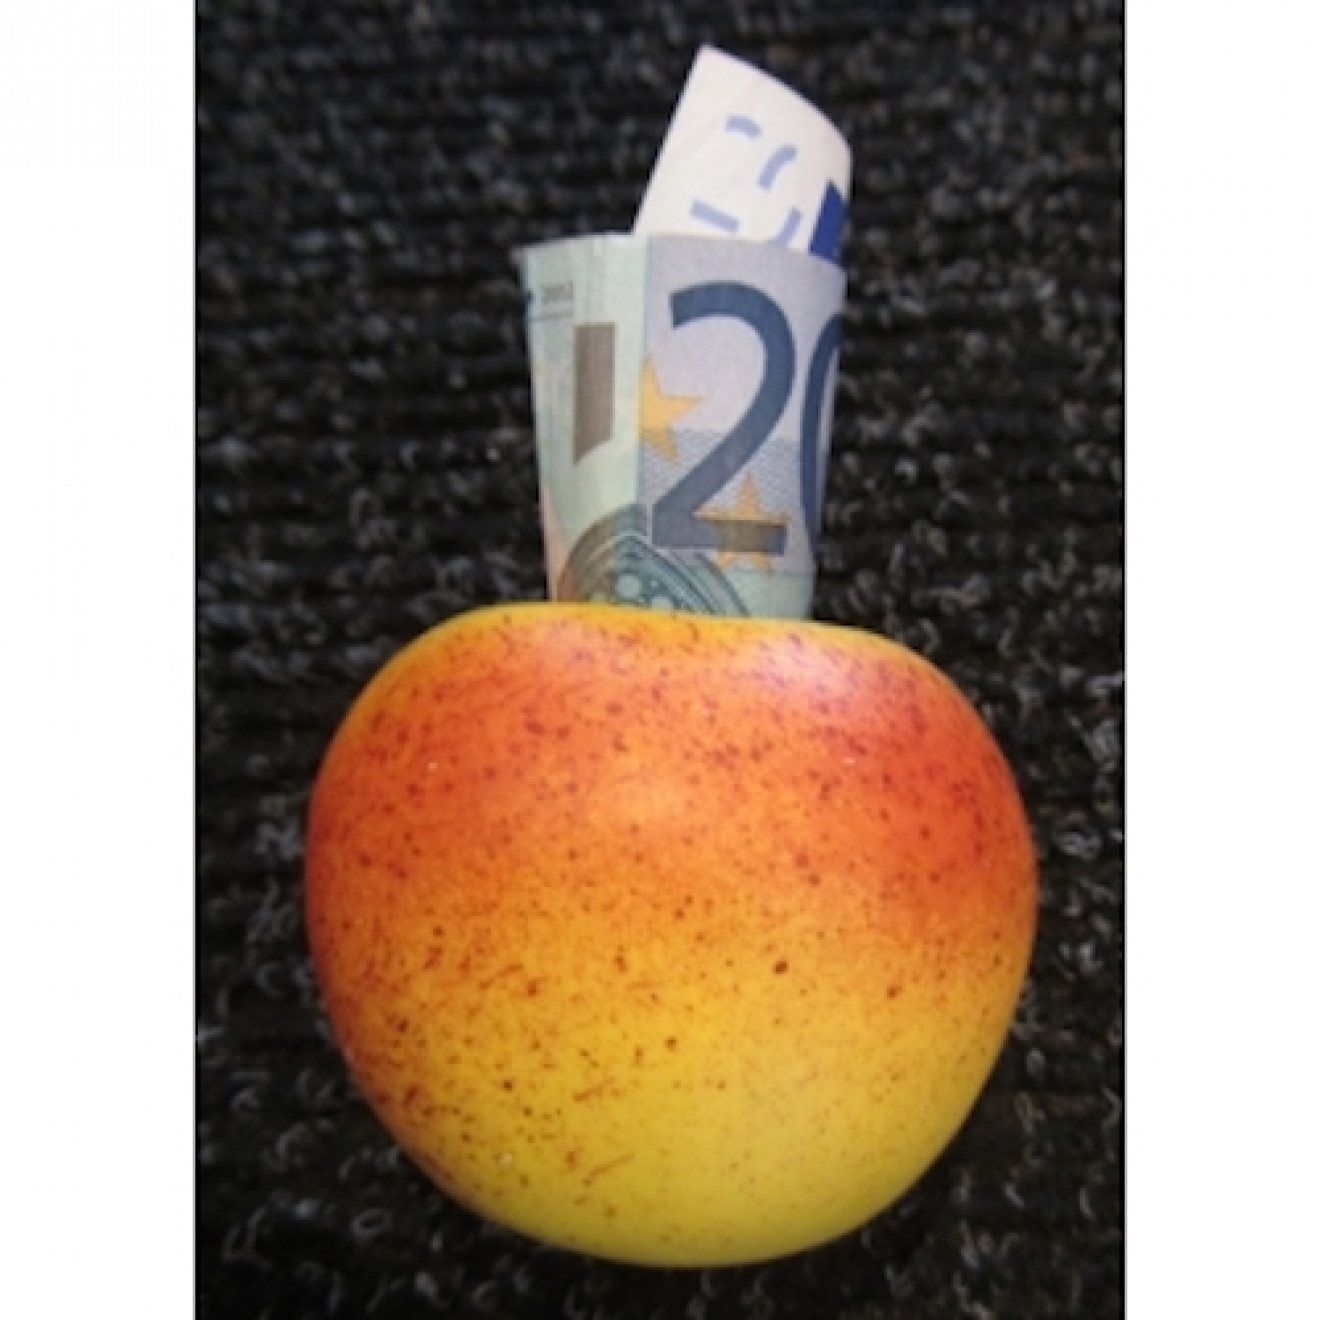 Geldschein in Apfel